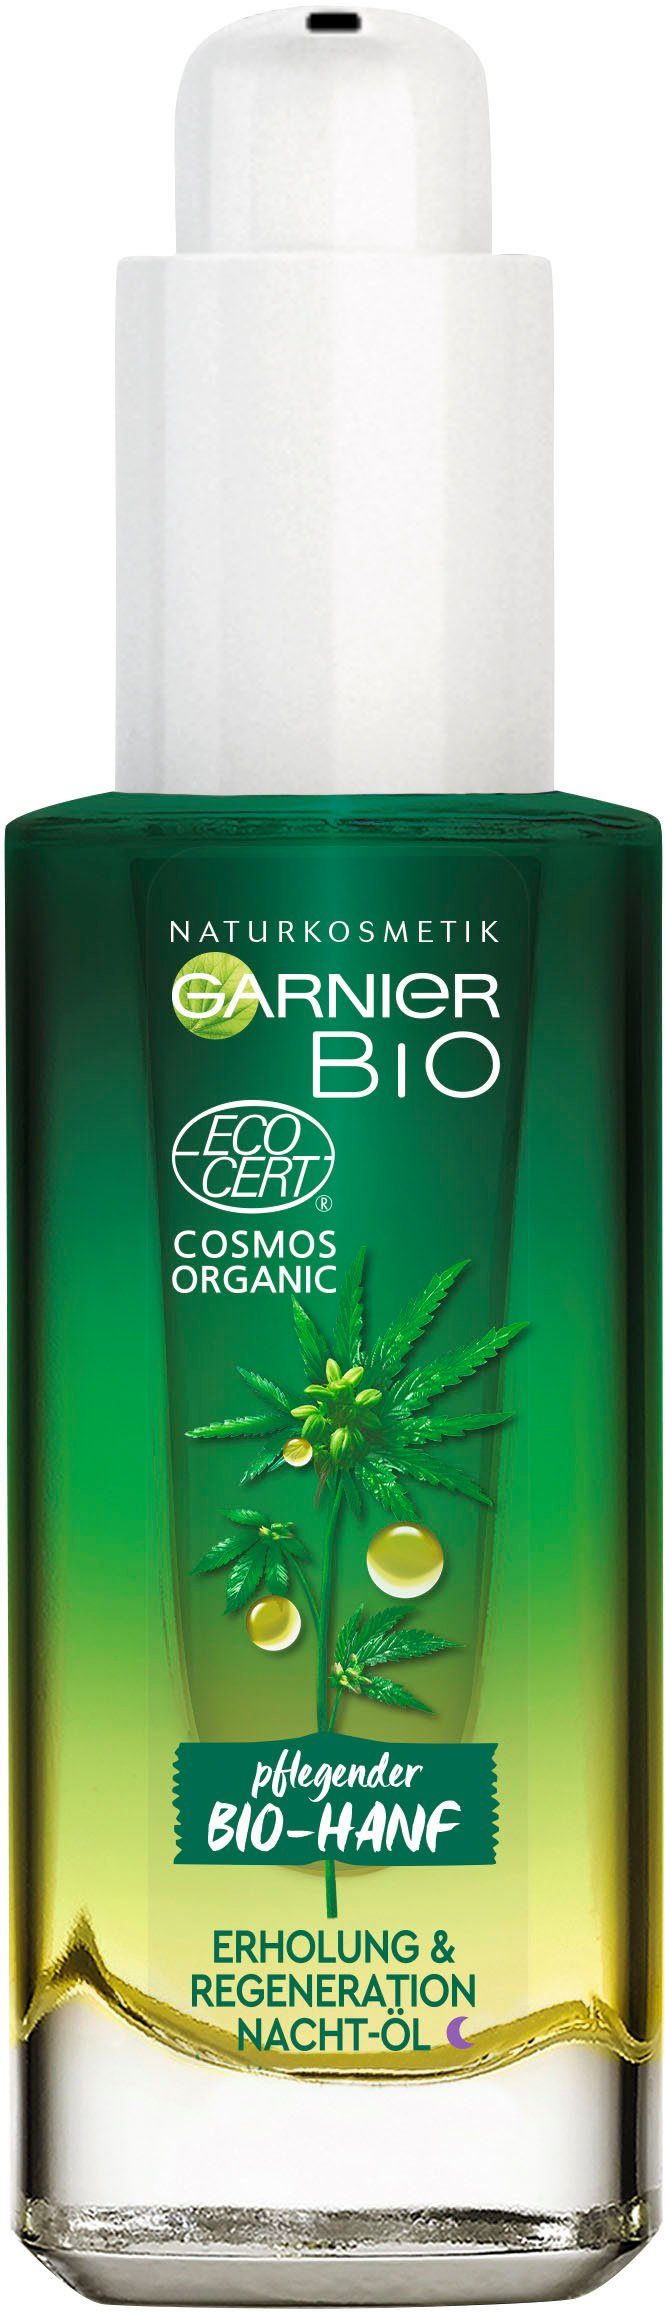 GARNIER Gesichtsöl Bio-Hanf Erholung & Regeneration Nacht-Öl, Naturkosmetik | Gesichtsöle